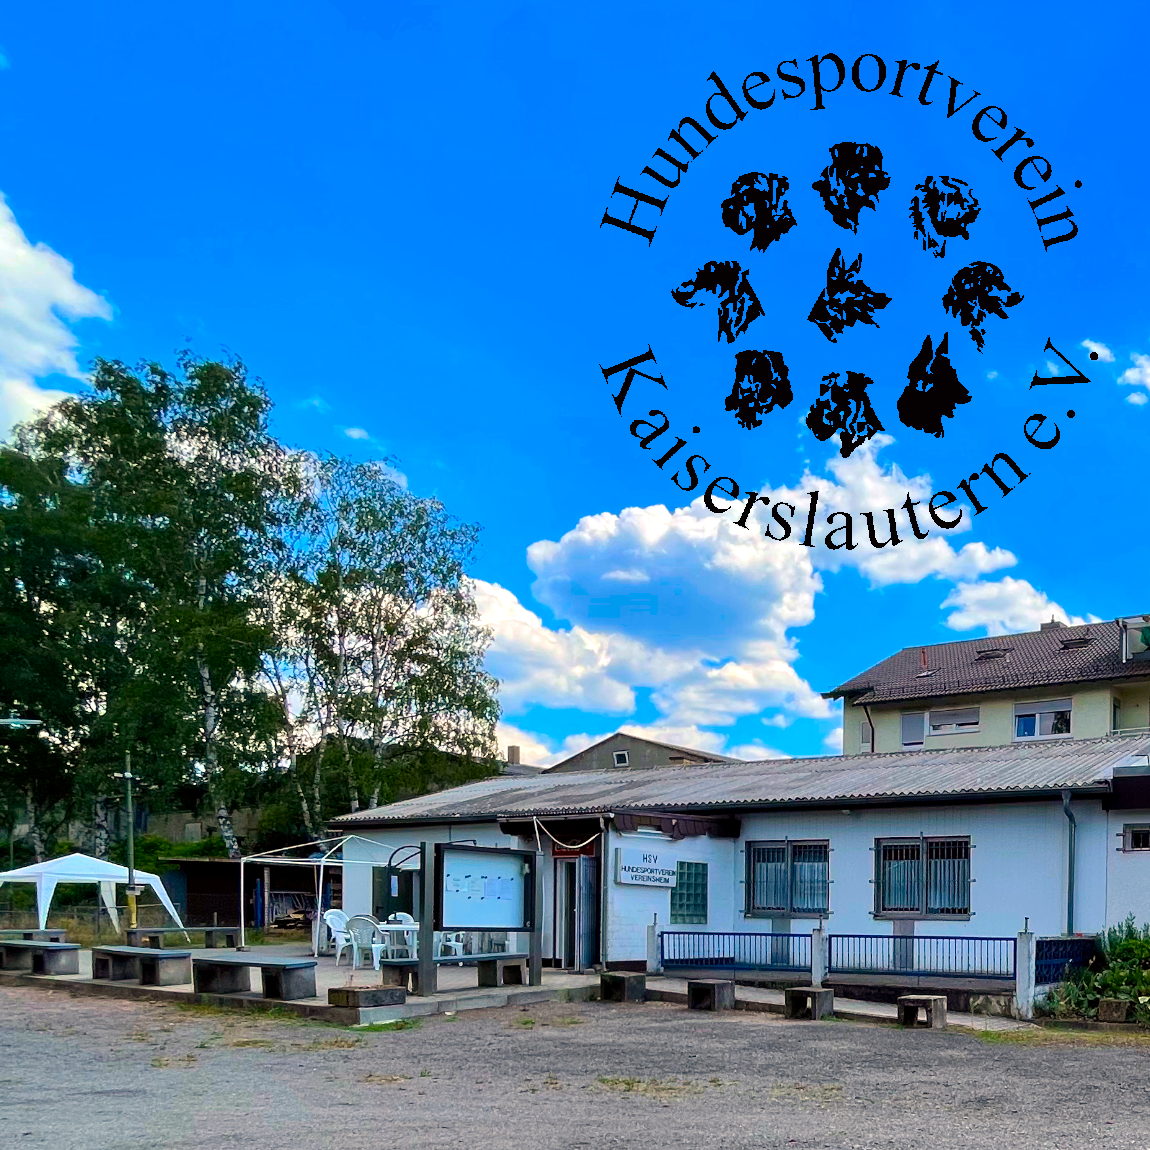 Bild vom Vereinshaus des Hundesportverein Kaiserslautern e. V. im Hintergrund ist der Himmel zu sehen, in den Hintergrund wurde das schwarze Vereinslogo eingefügt